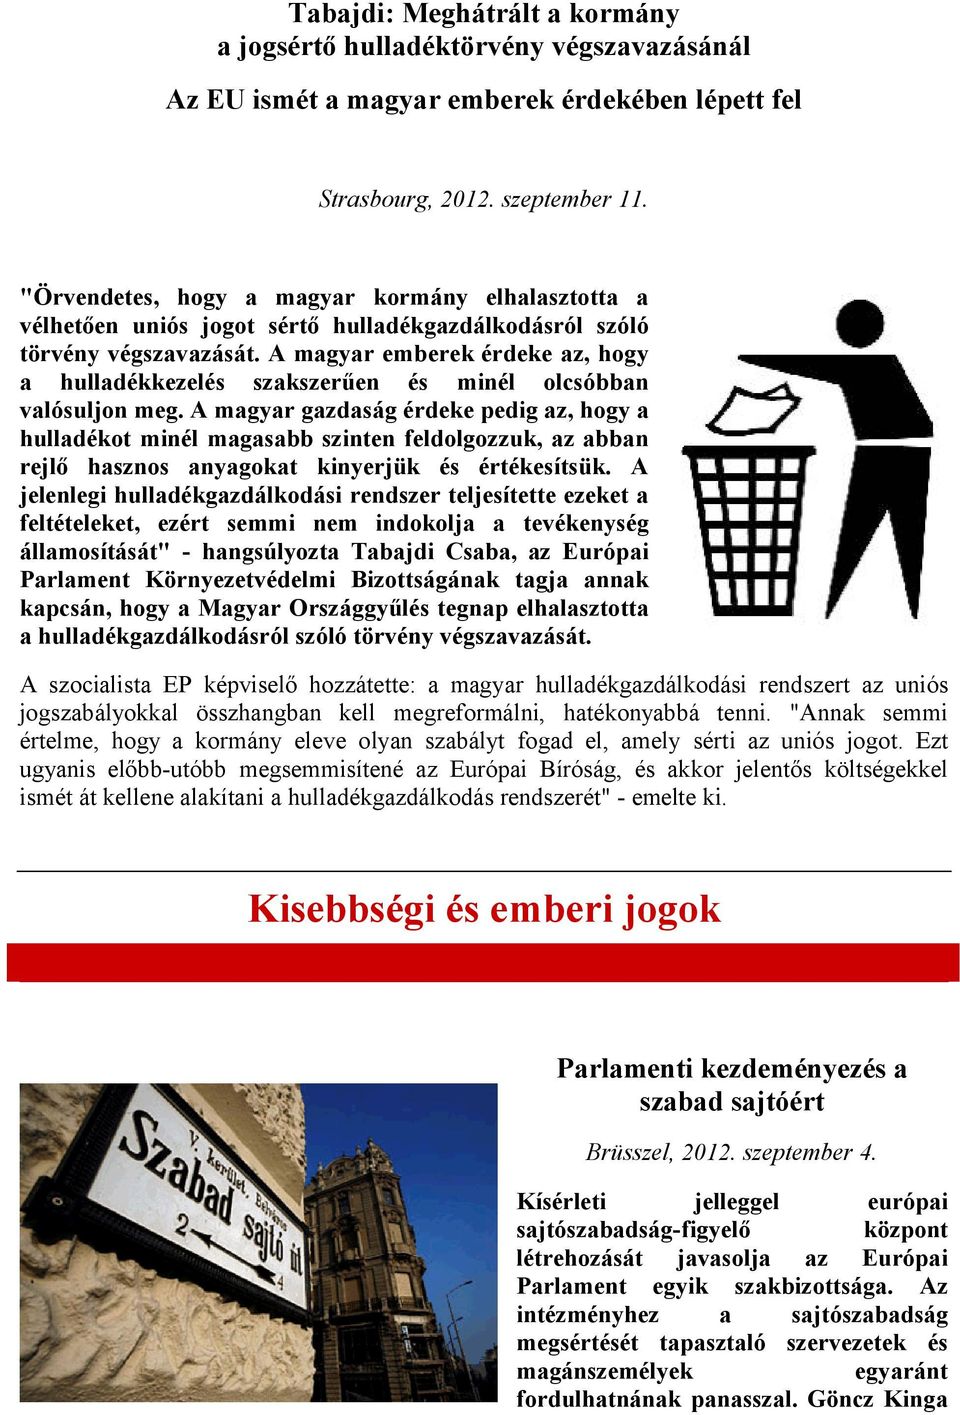 A magyar emberek érdeke az, hogy a hulladékkezelés szakszerűen és minél olcsóbban valósuljon meg.